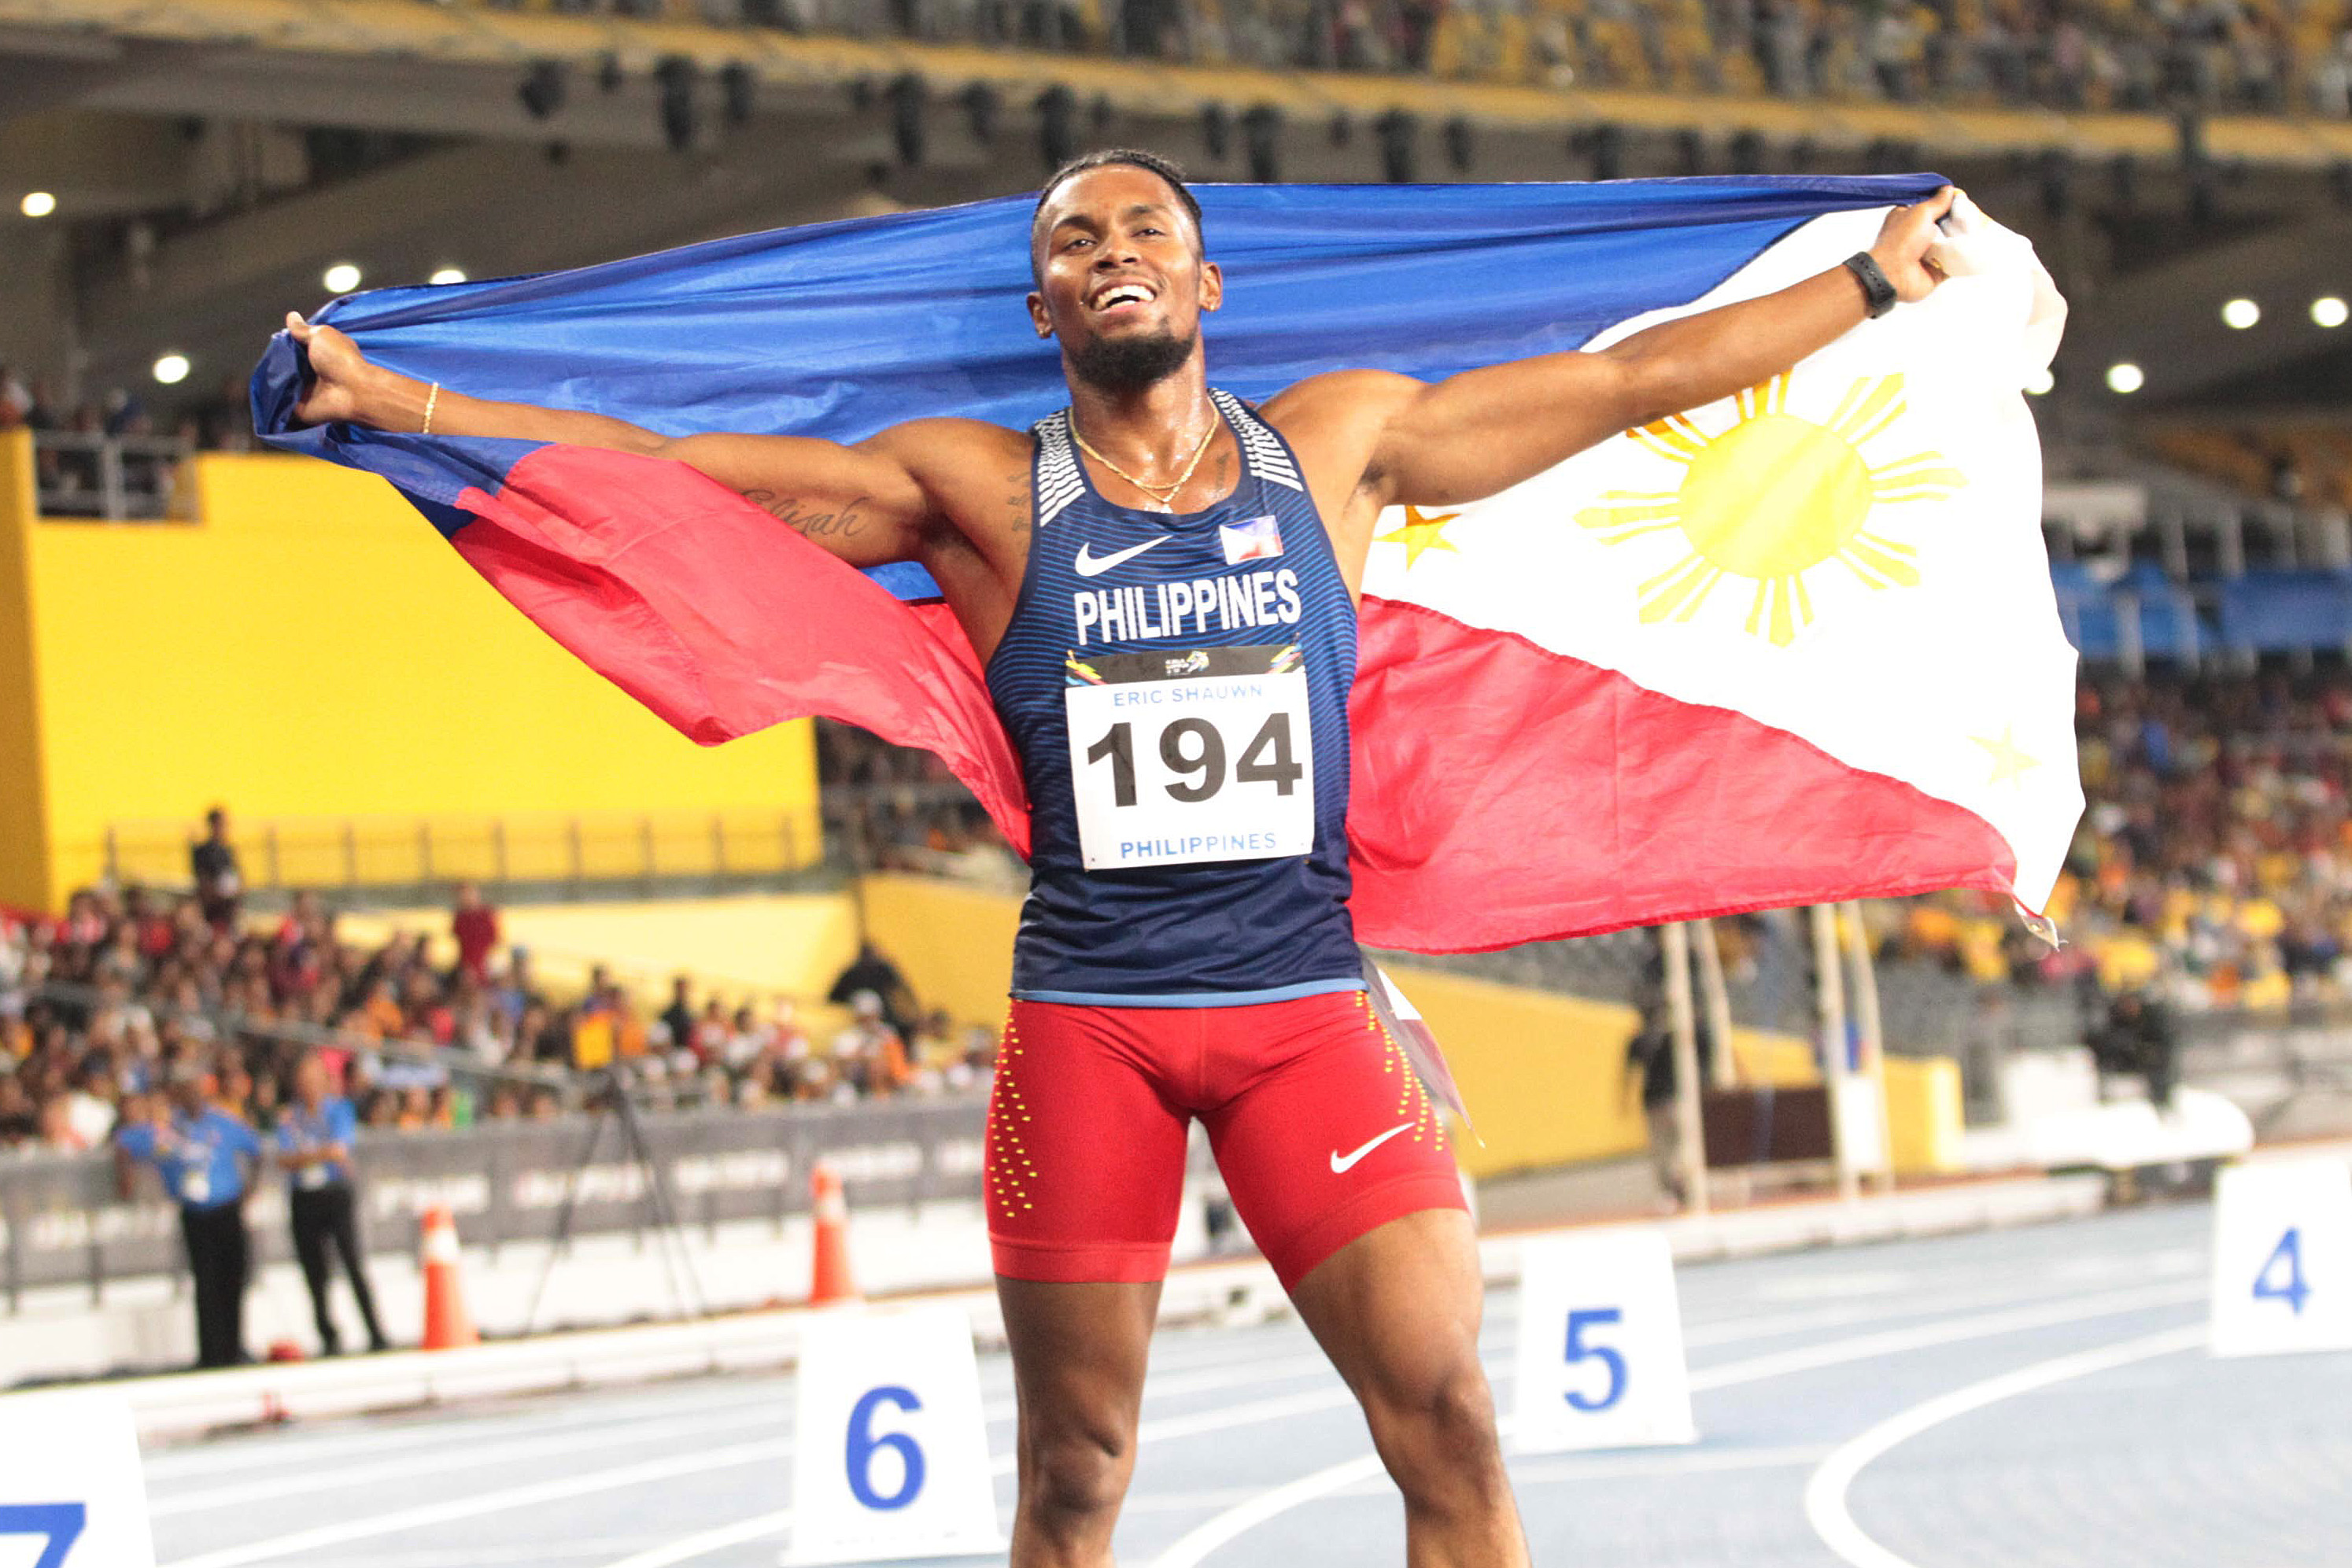 FOTO DE ARCHIVO: Eric Cray de Filipinas compite en el evento masculino de 400 metros con vallas de los 29º Juegos del Sudeste Asiático.  Cray registró 50,03 segundos para ganar la medalla de oro.  FOTO CONTRIBUIDA/PISCINA